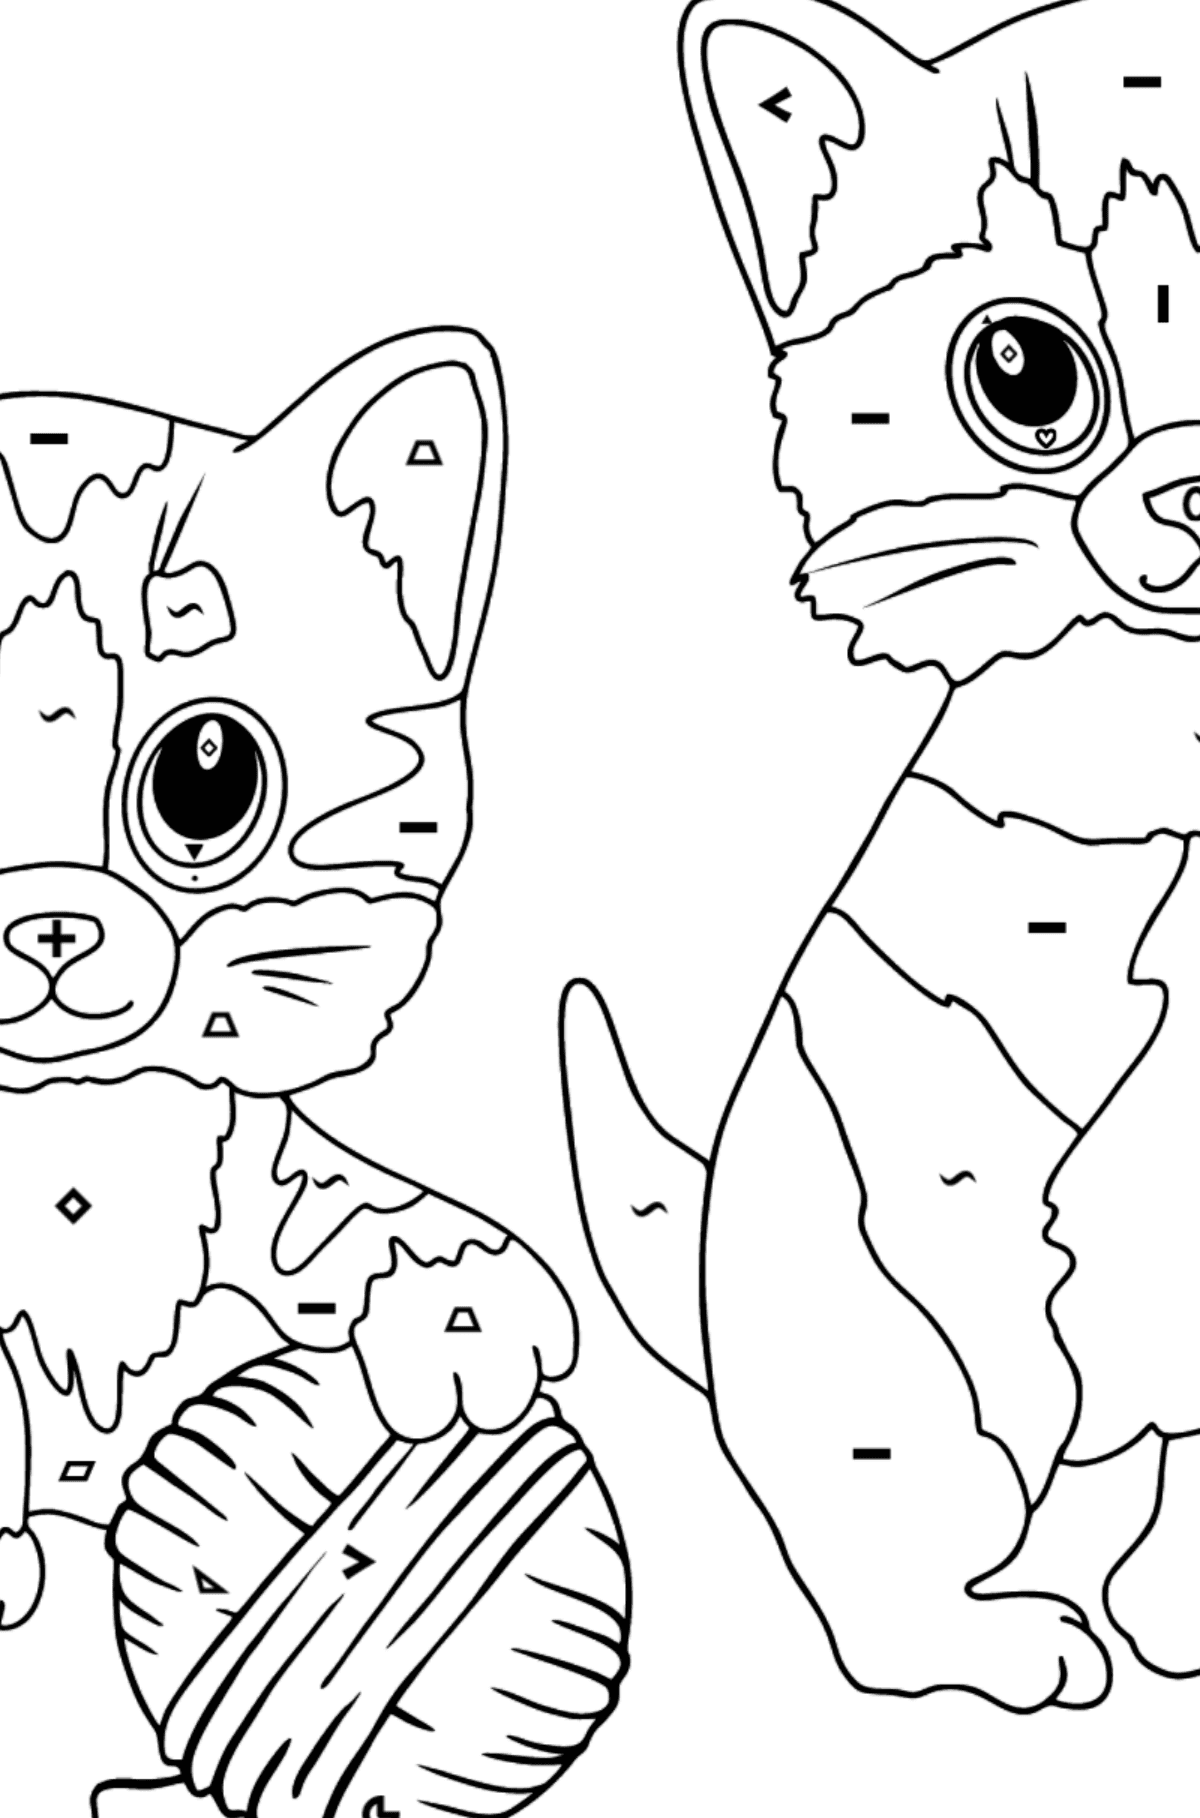 Tegning til fargelegging morsomme kattunger (vanskelig) - Fargelegge etter symboler og geometriske former for barn